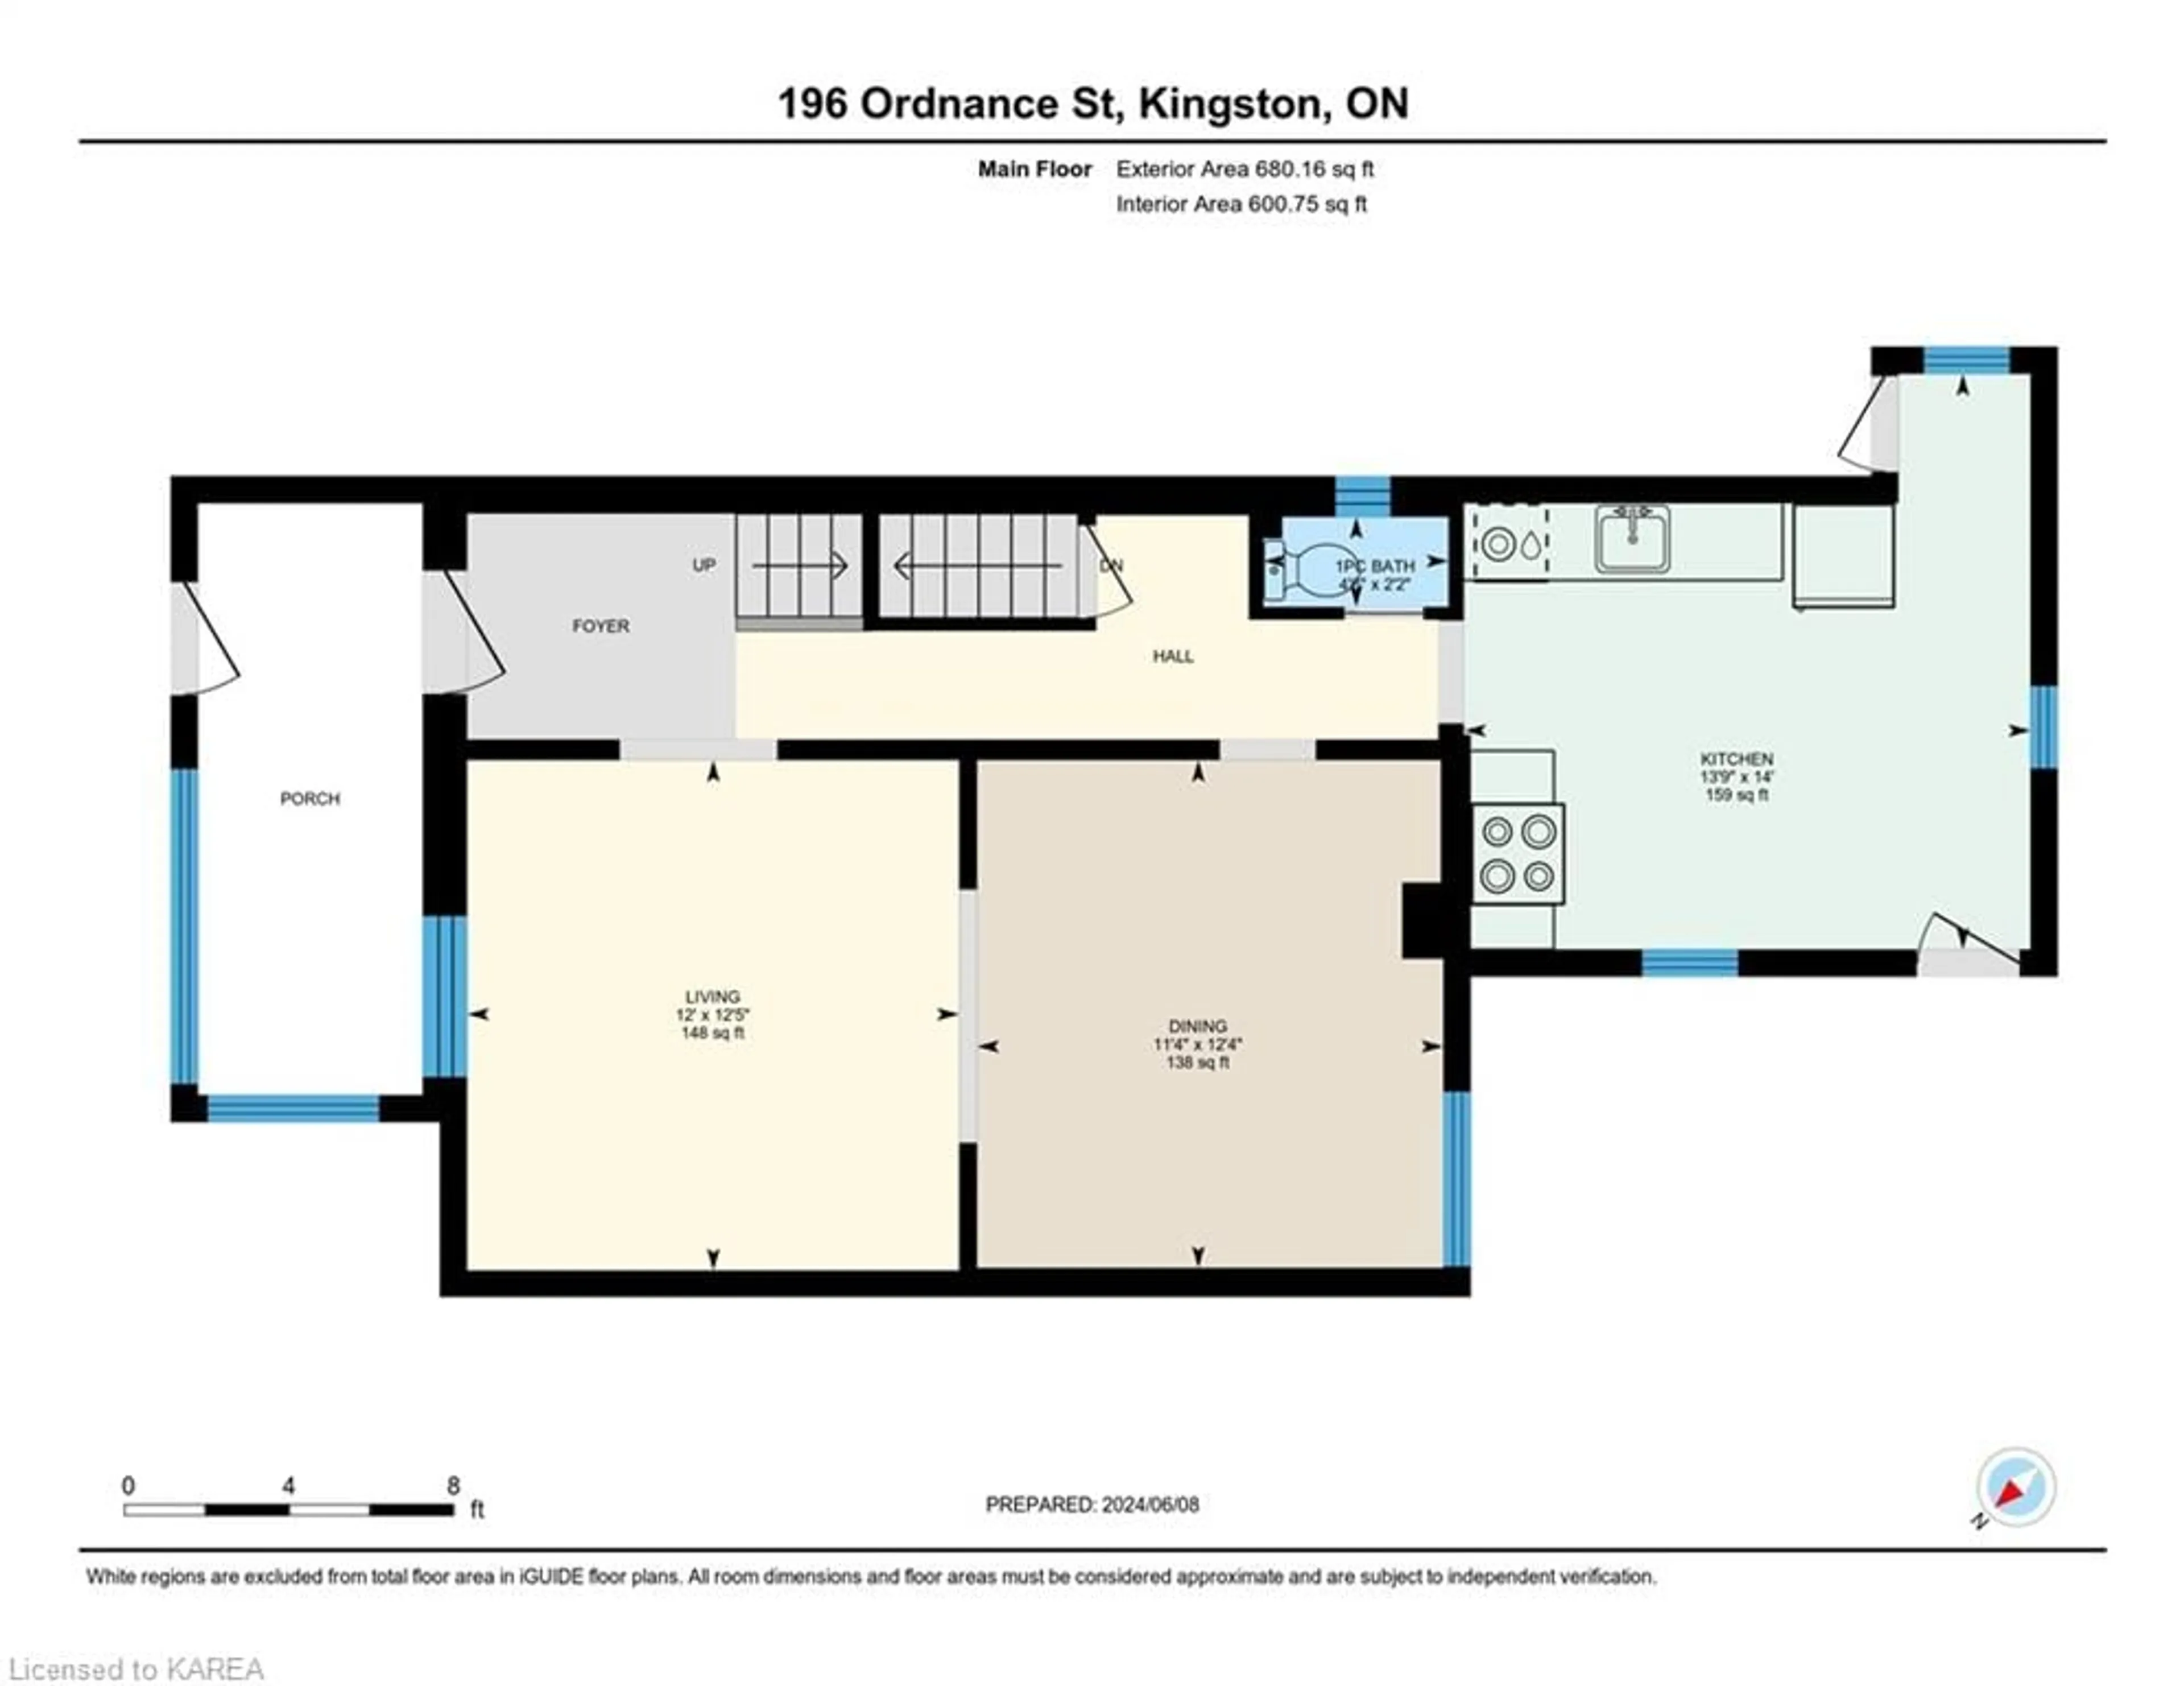 Floor plan for 196 Ordnance St, Kingston Ontario K7K 1H1